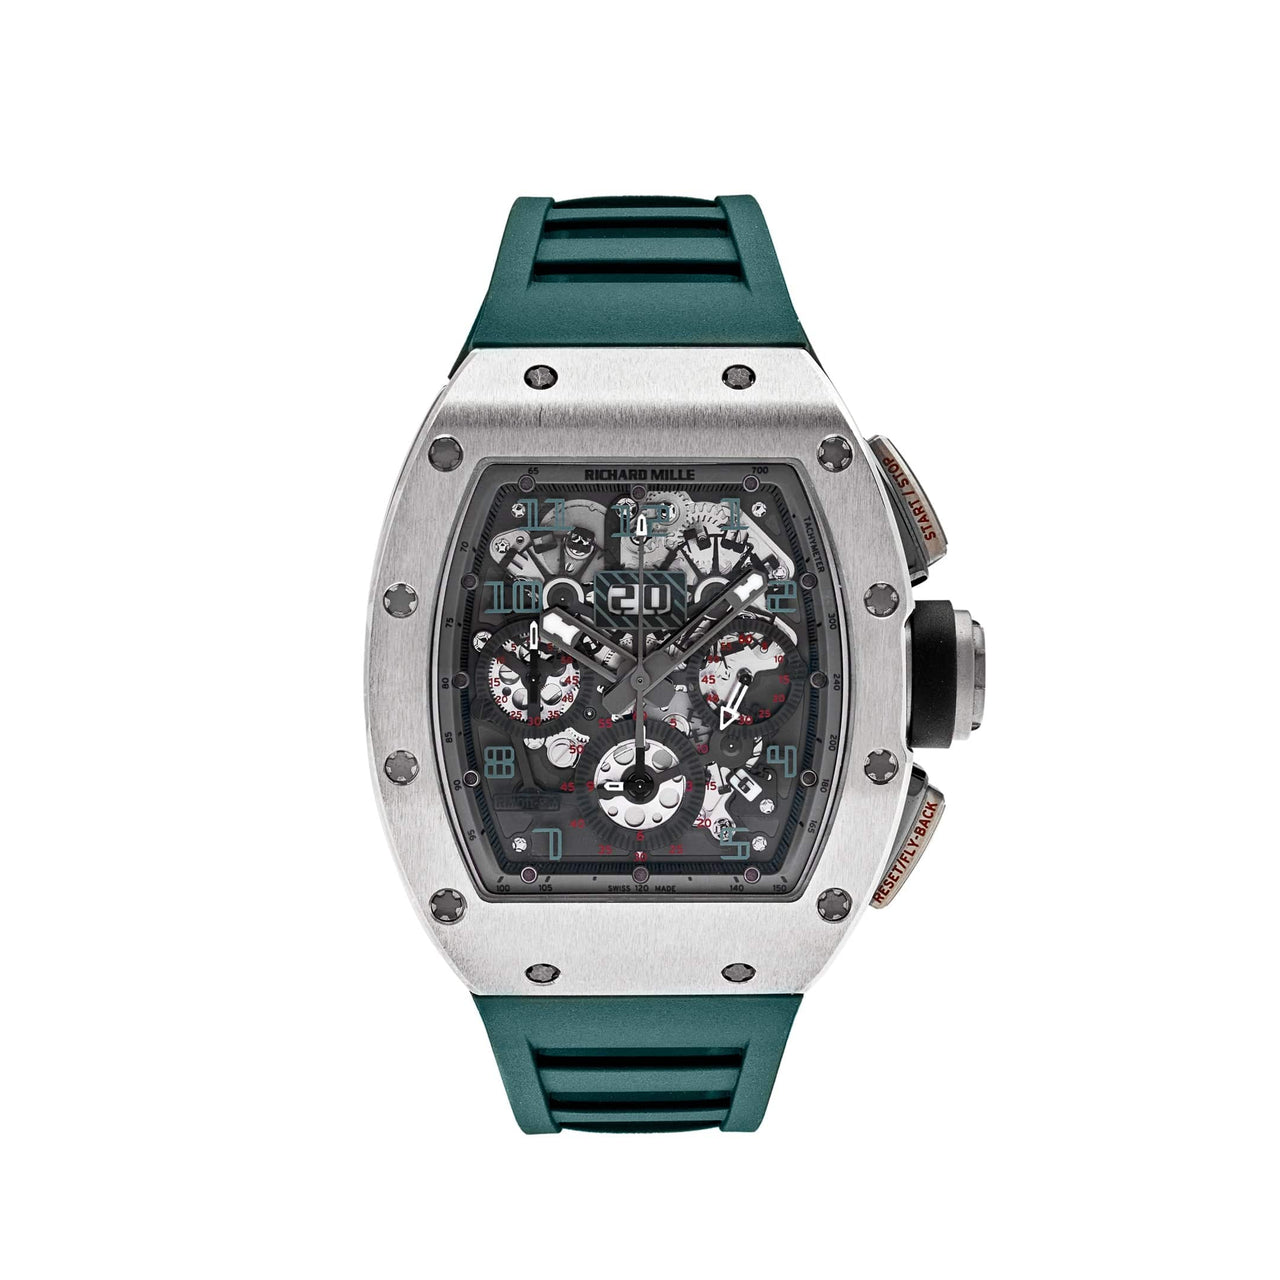 Luxury Watch Richard Mille White Gold & Titanium Polo de Deauville RM011-FM Wrist Aficionado